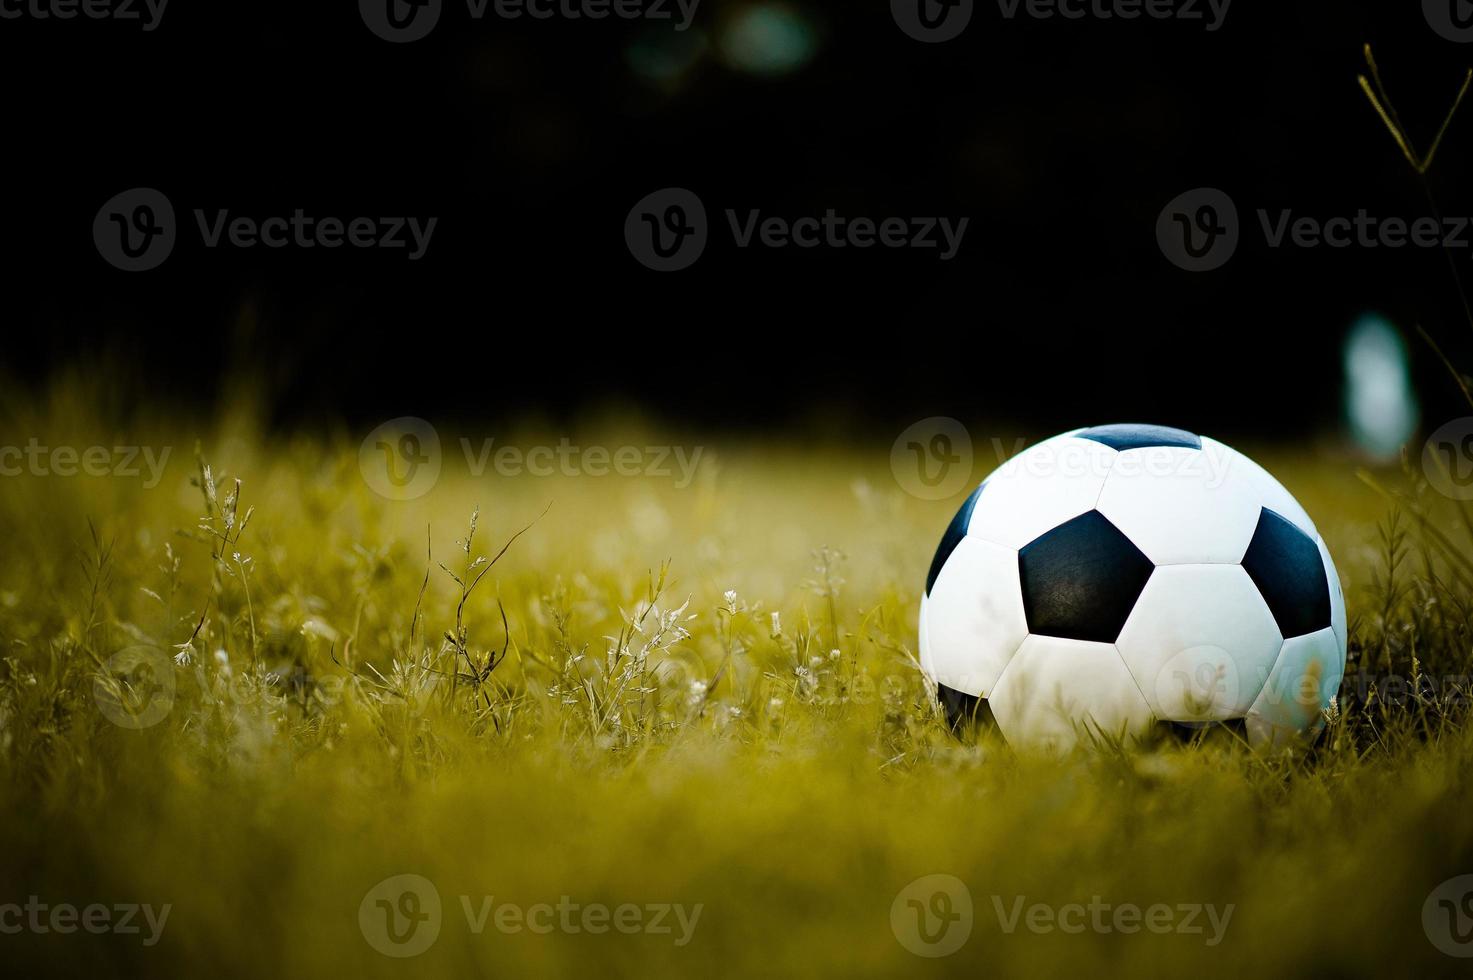 bollen på gräsmattan i ett gult fält på fotbollsplanen redo för straff. och börja aktivt fotboll foto